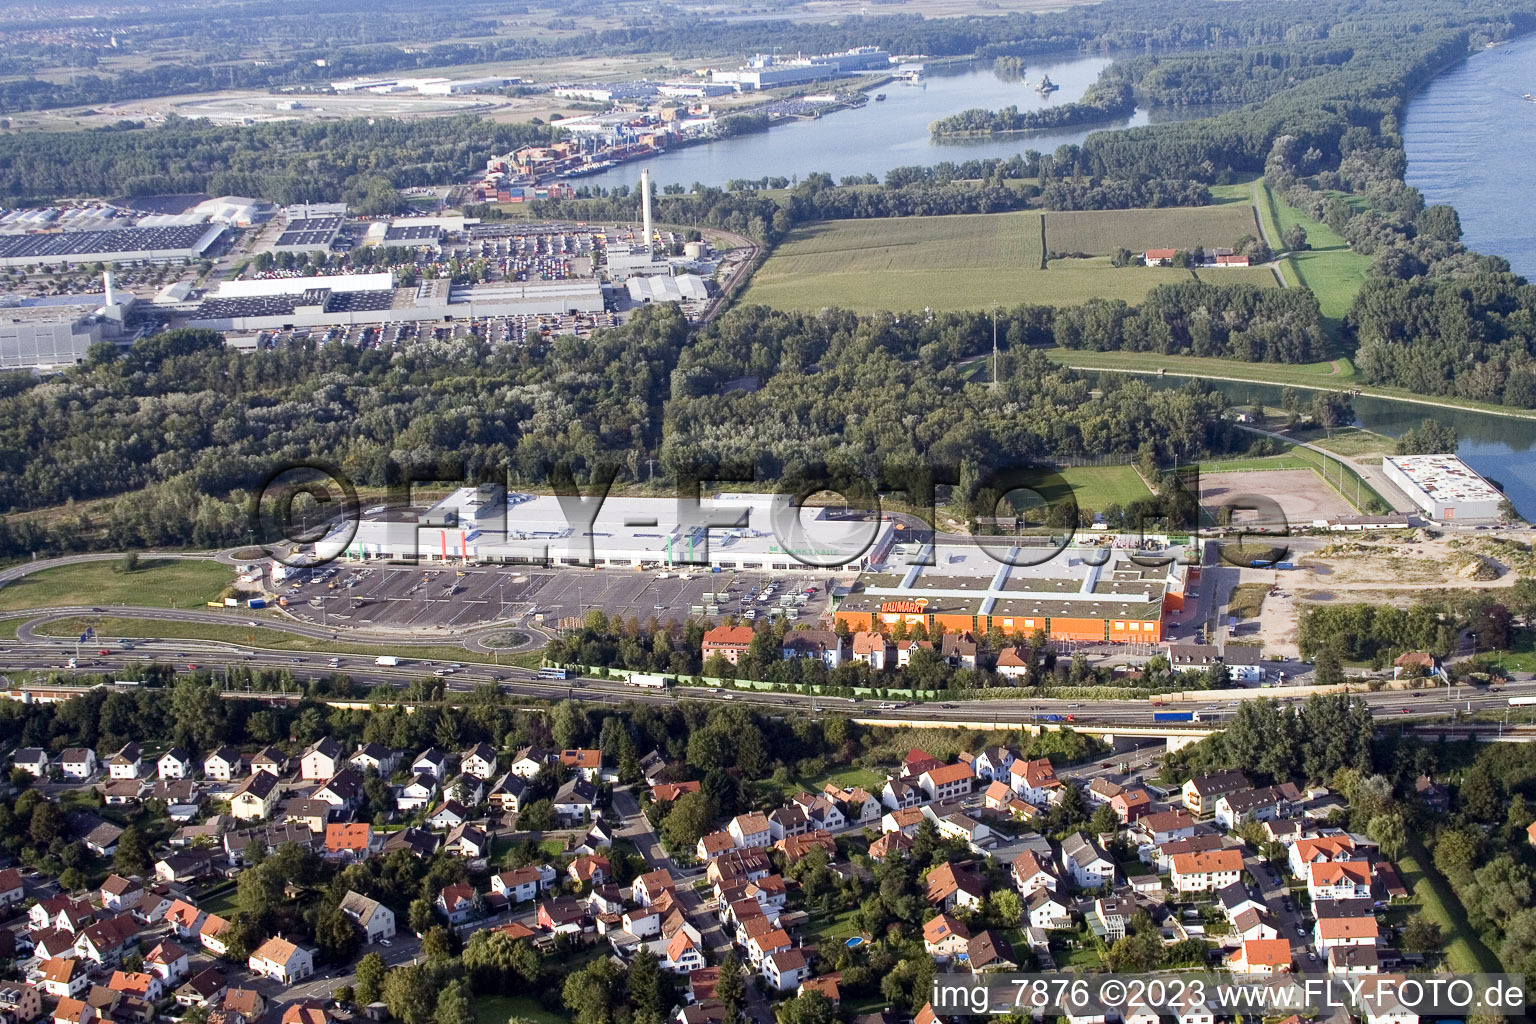 Vue aérienne de Centre commercial à le quartier Maximiliansau in Wörth am Rhein dans le département Rhénanie-Palatinat, Allemagne